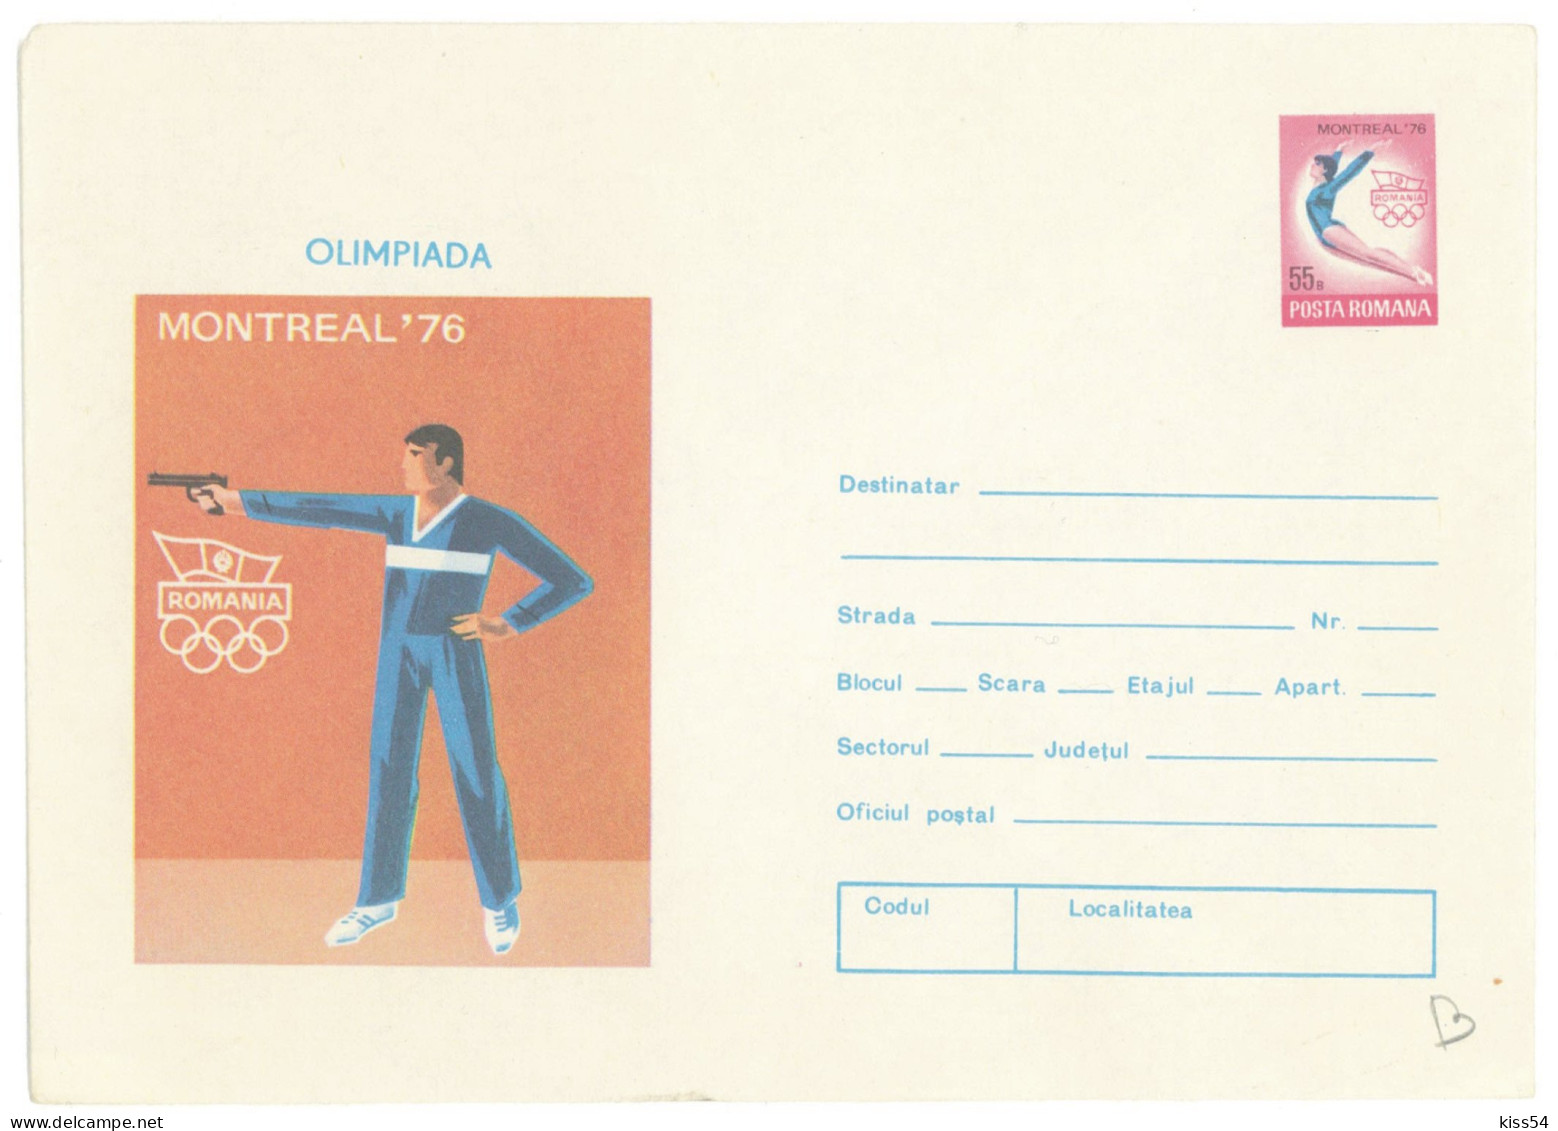 IP 76 - 128 SHOOT, GYMNASTICS, OLIMPIC GAMES, Montreal, Romania - Stationery - Unused - 1976 - Interi Postali